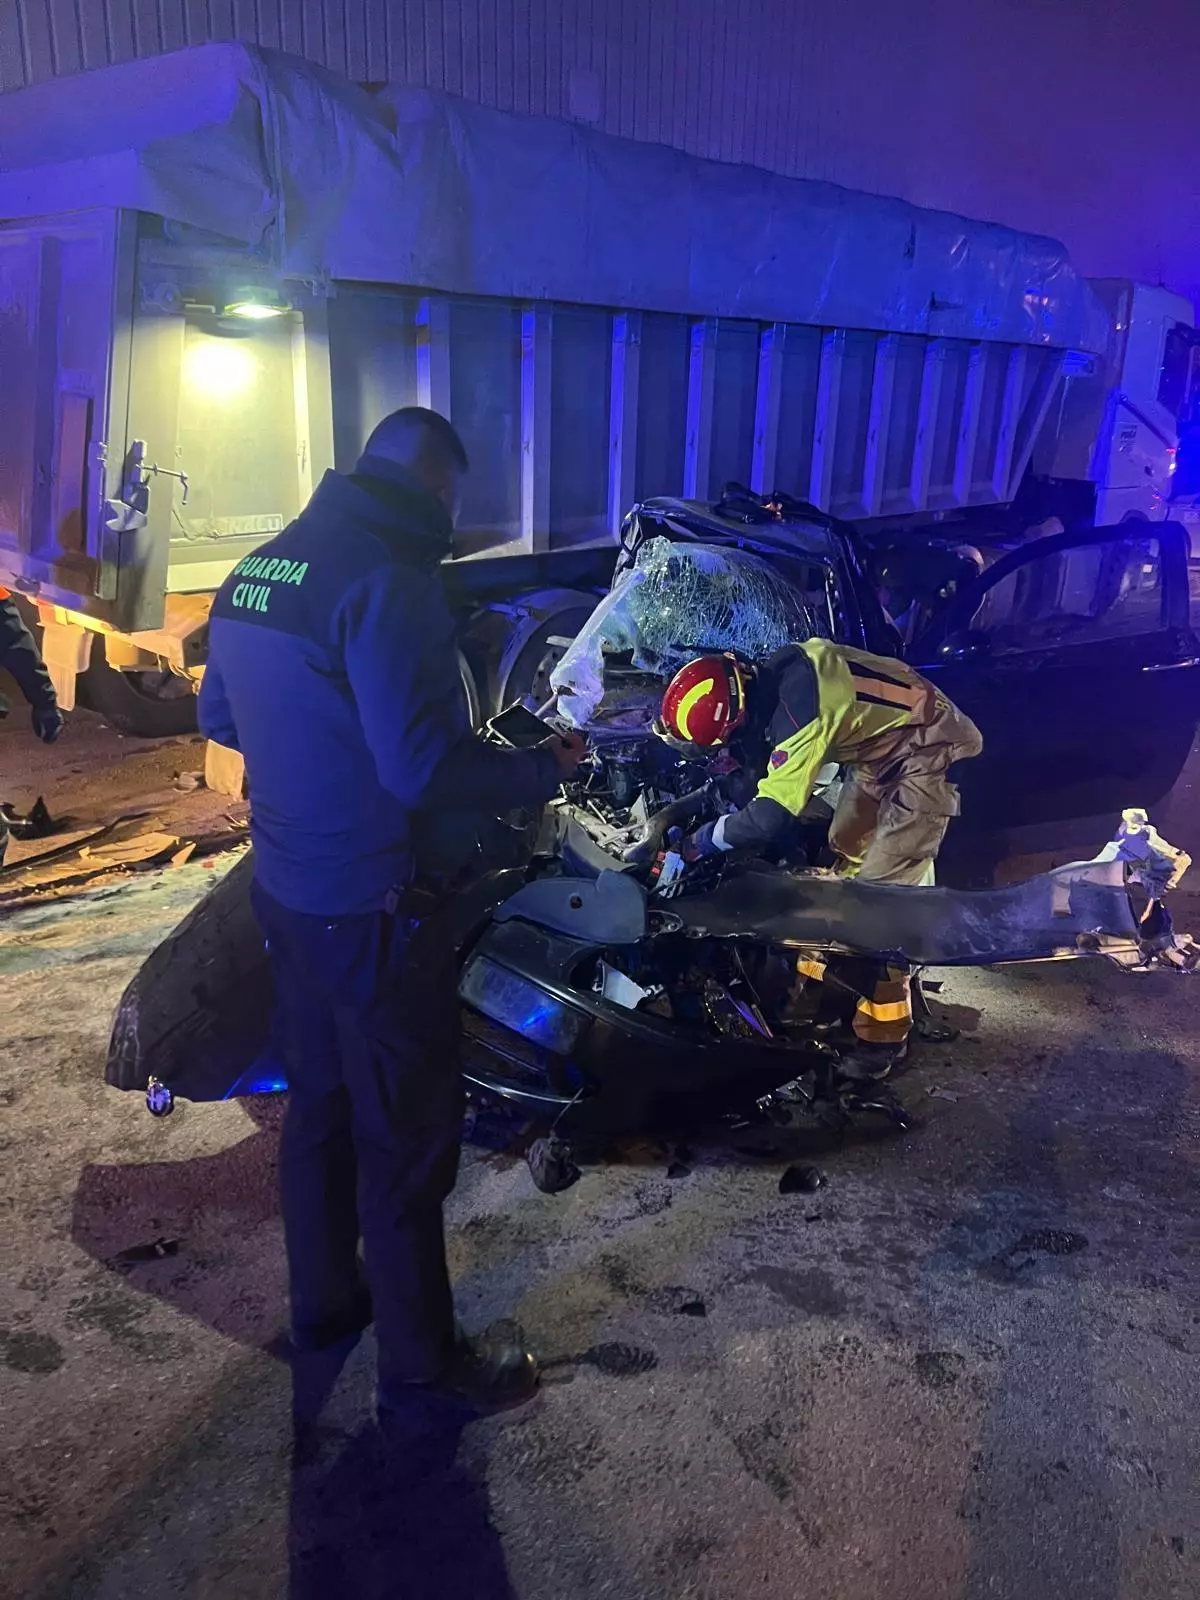 Cinco jóvenes heridos tras chocar su vehículo contra un camión aparcado en Andorra